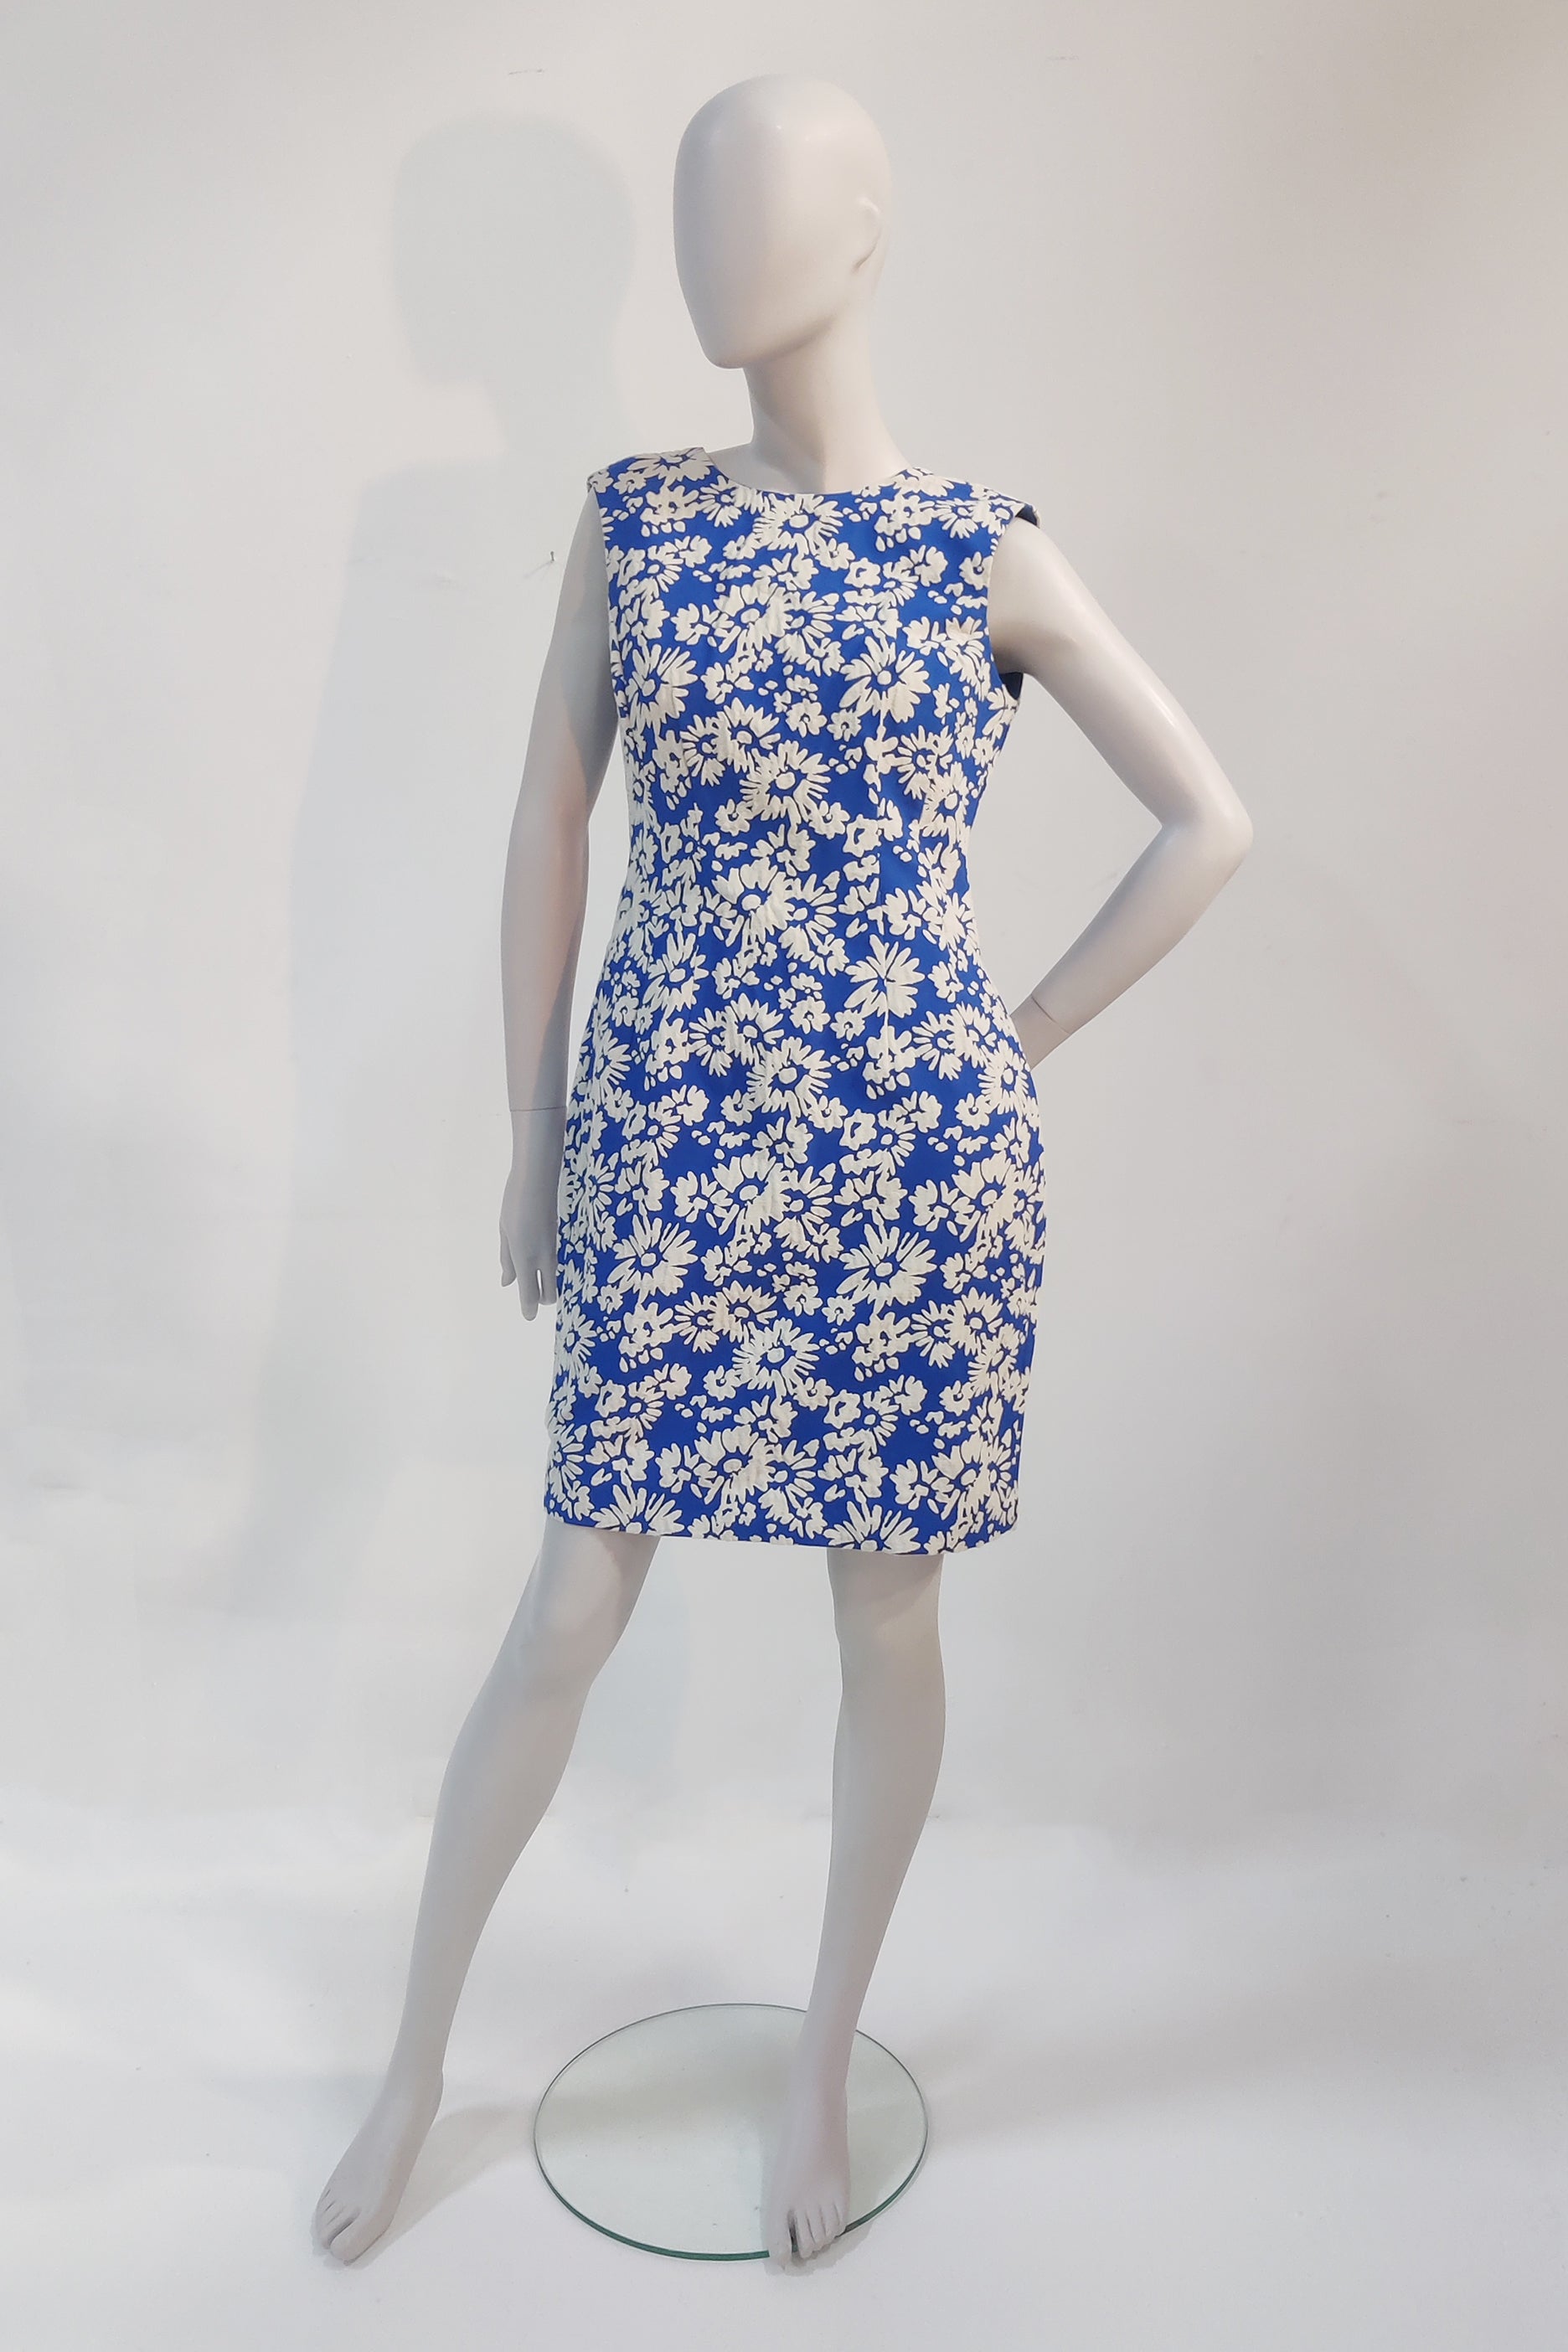 LK Bennett Blue Floral Shift Dress (Eu40)